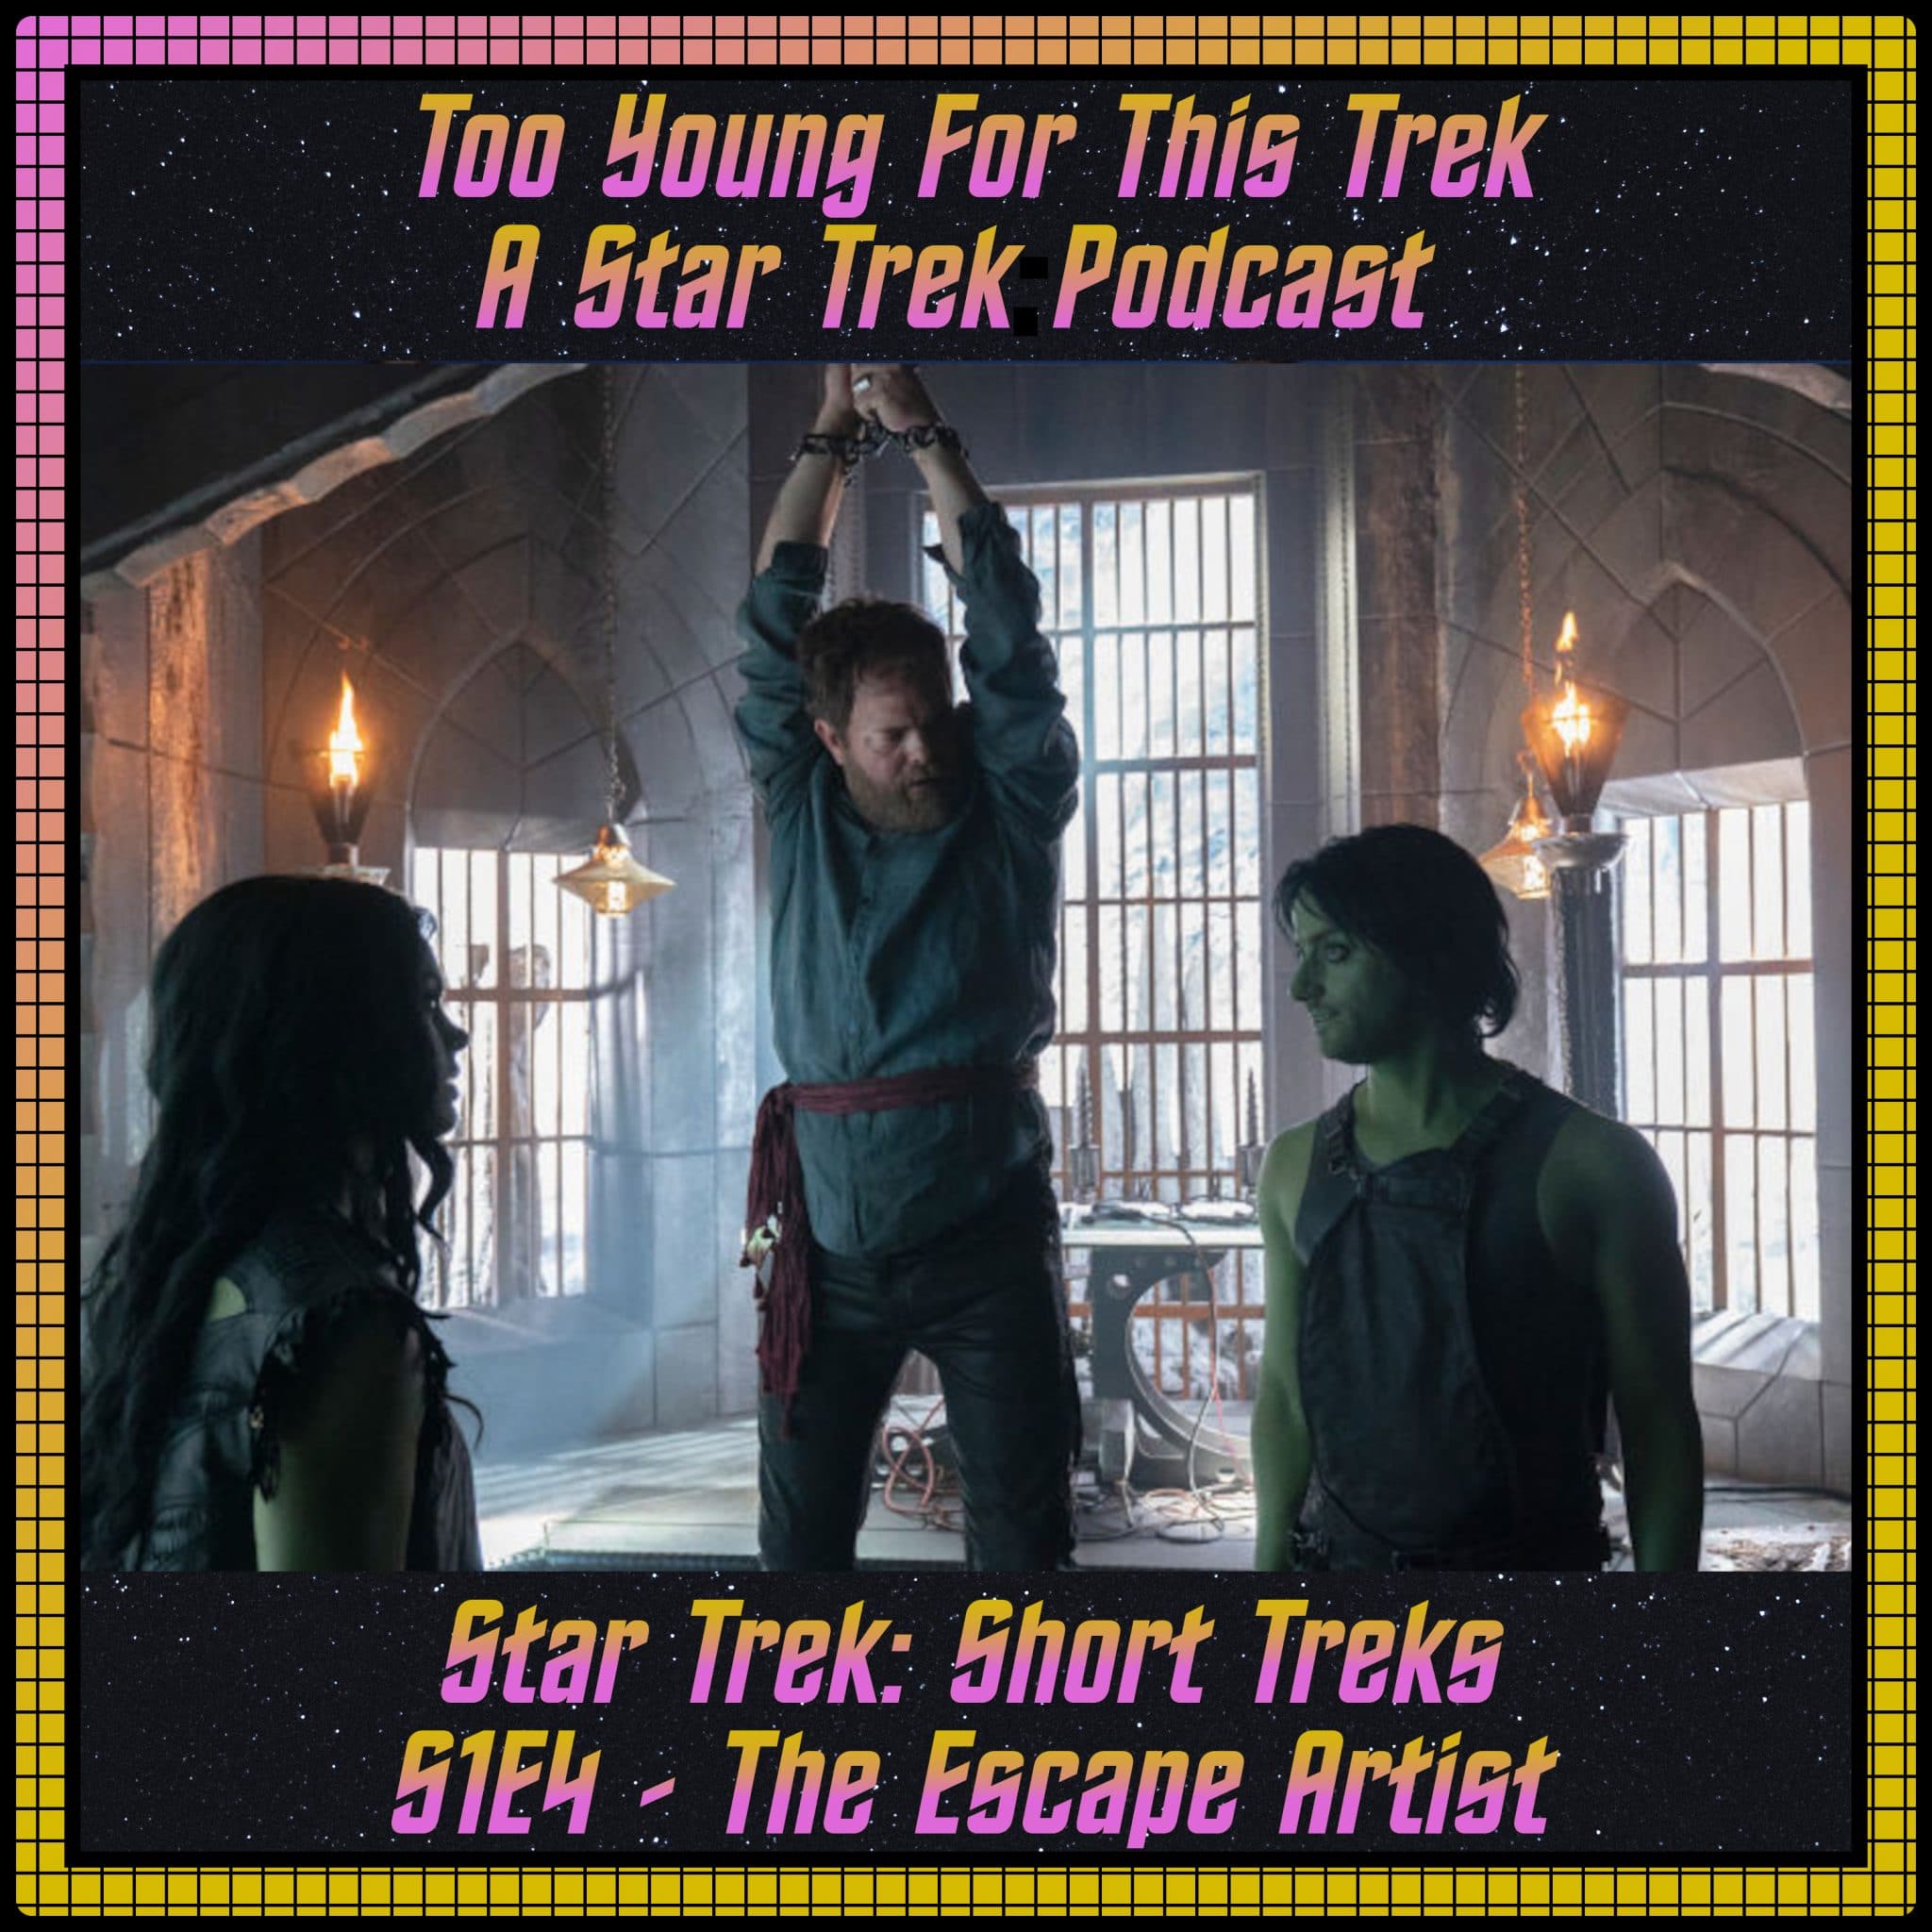 Star Trek: Short Treks S1E4 - The Escape Artist